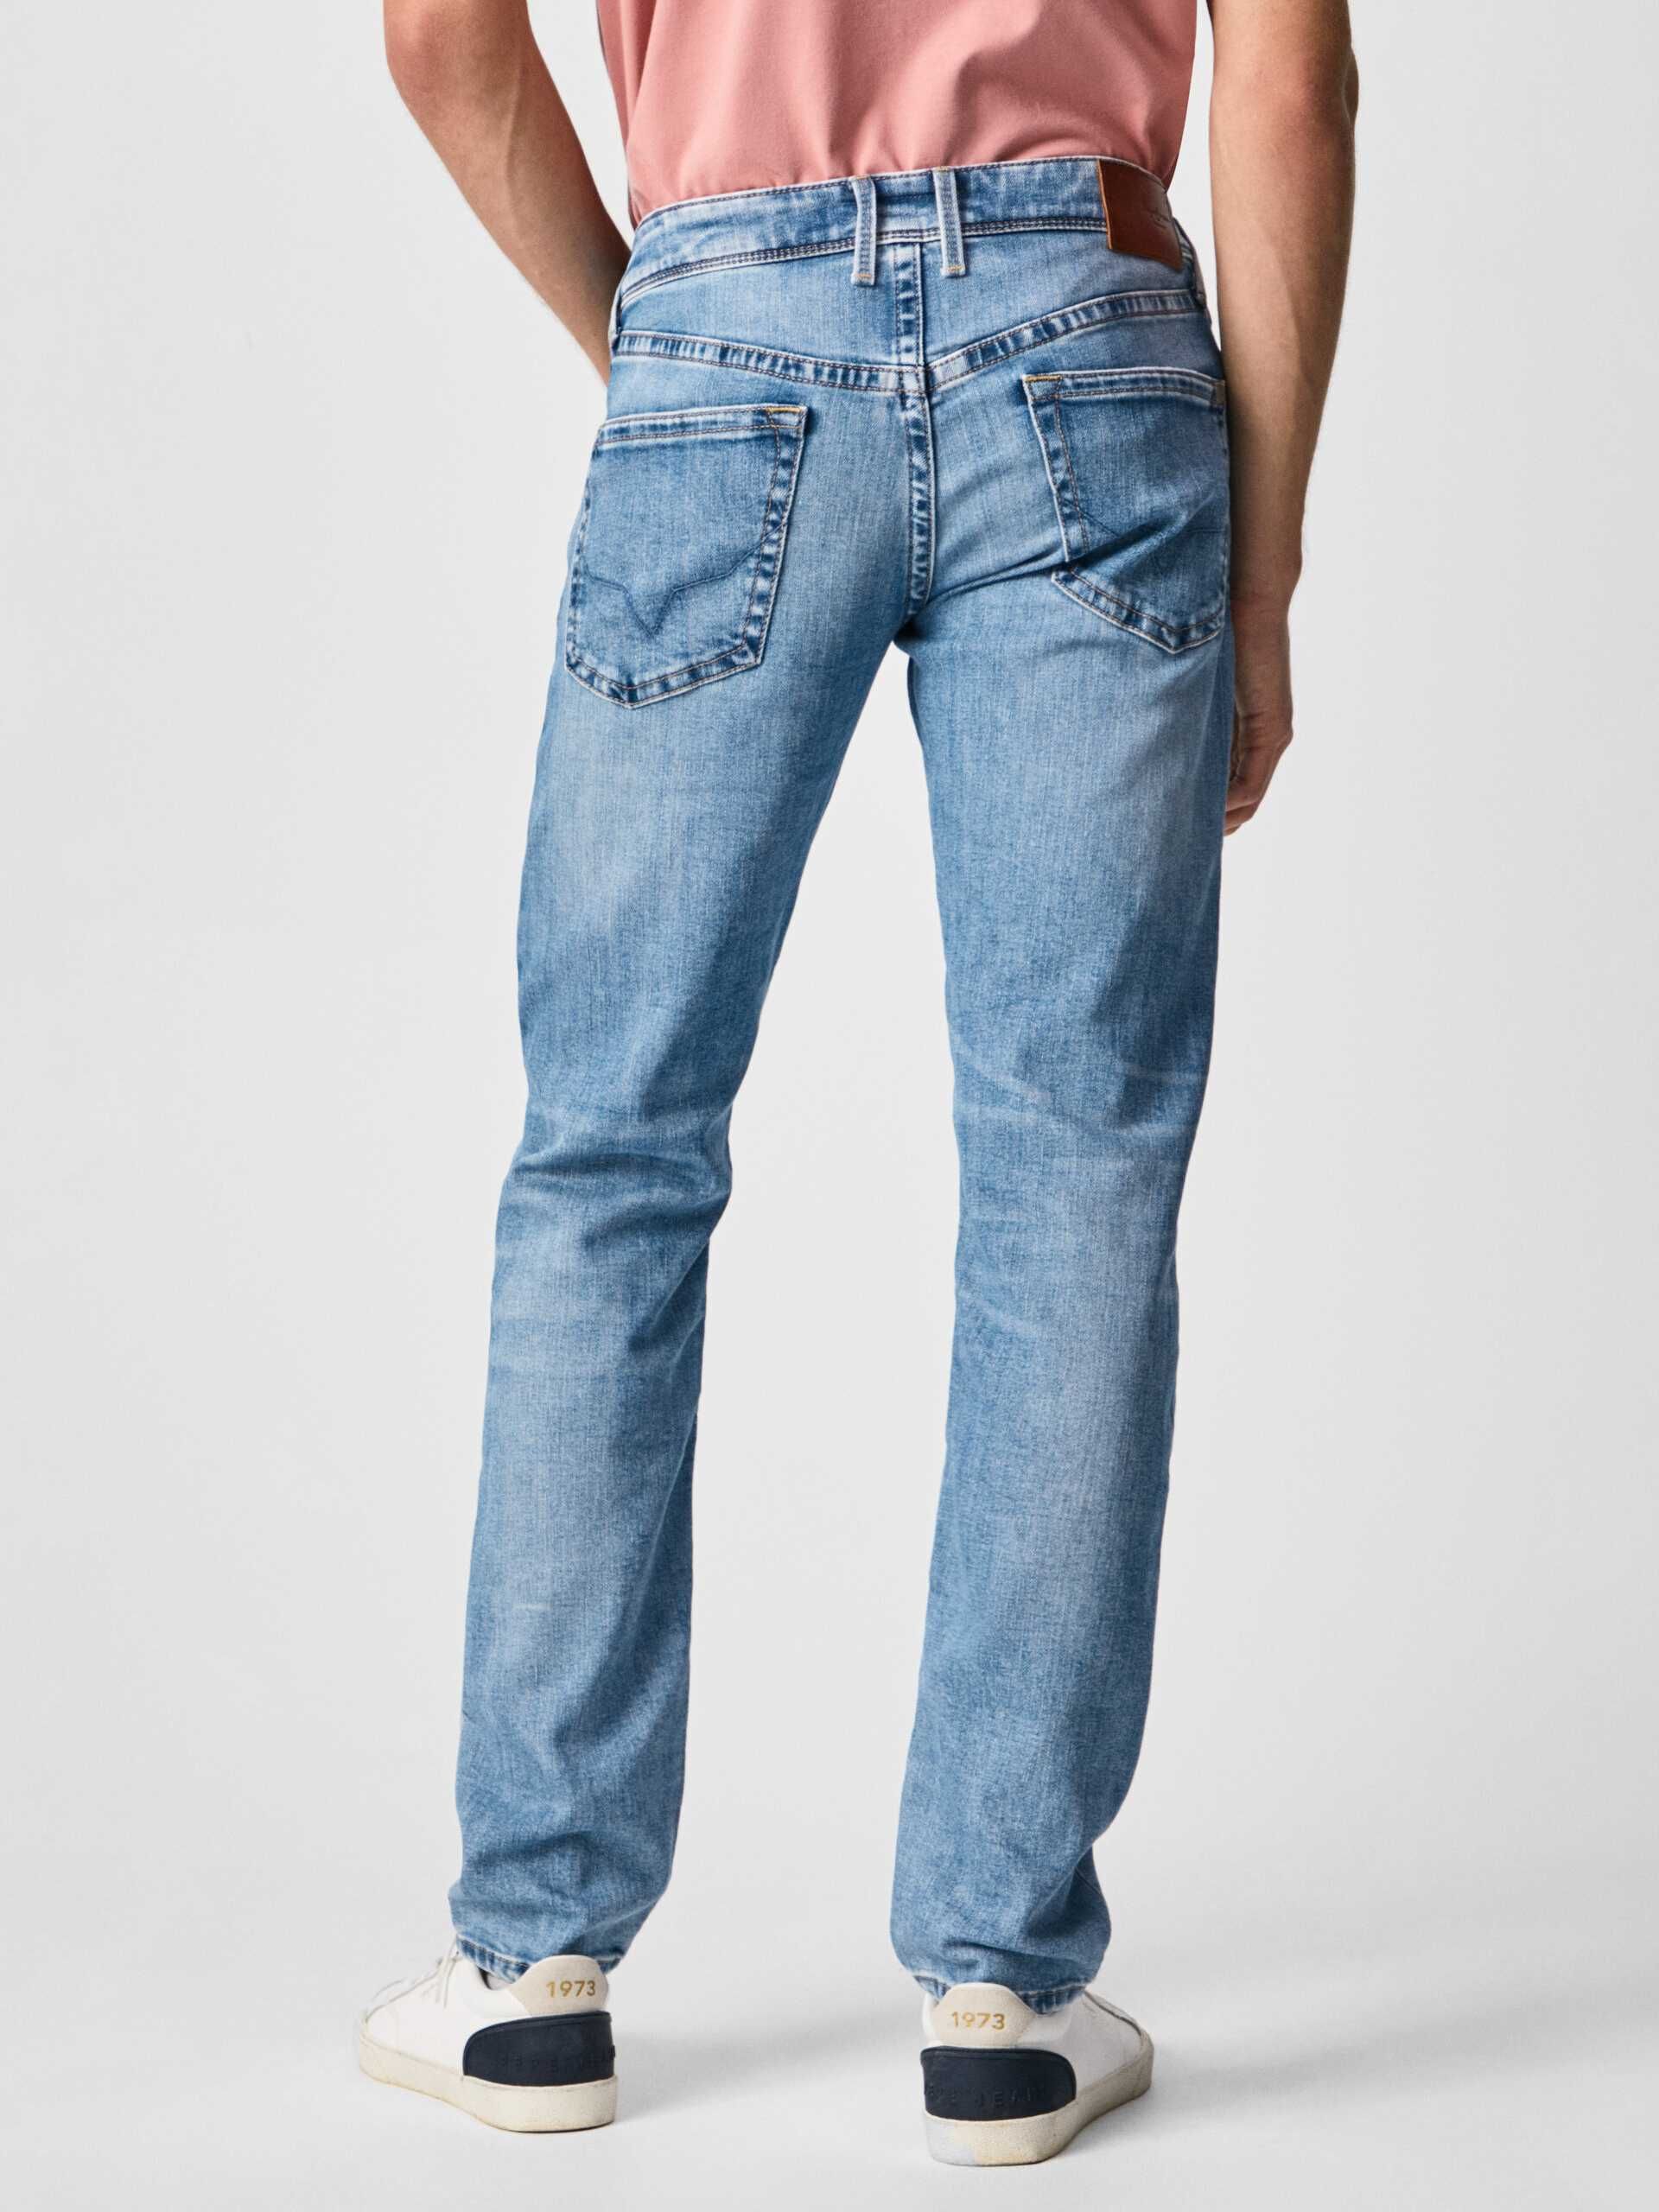 Blugi Noi originali Pepe Jeans, foarte frumosi, M, L, XL